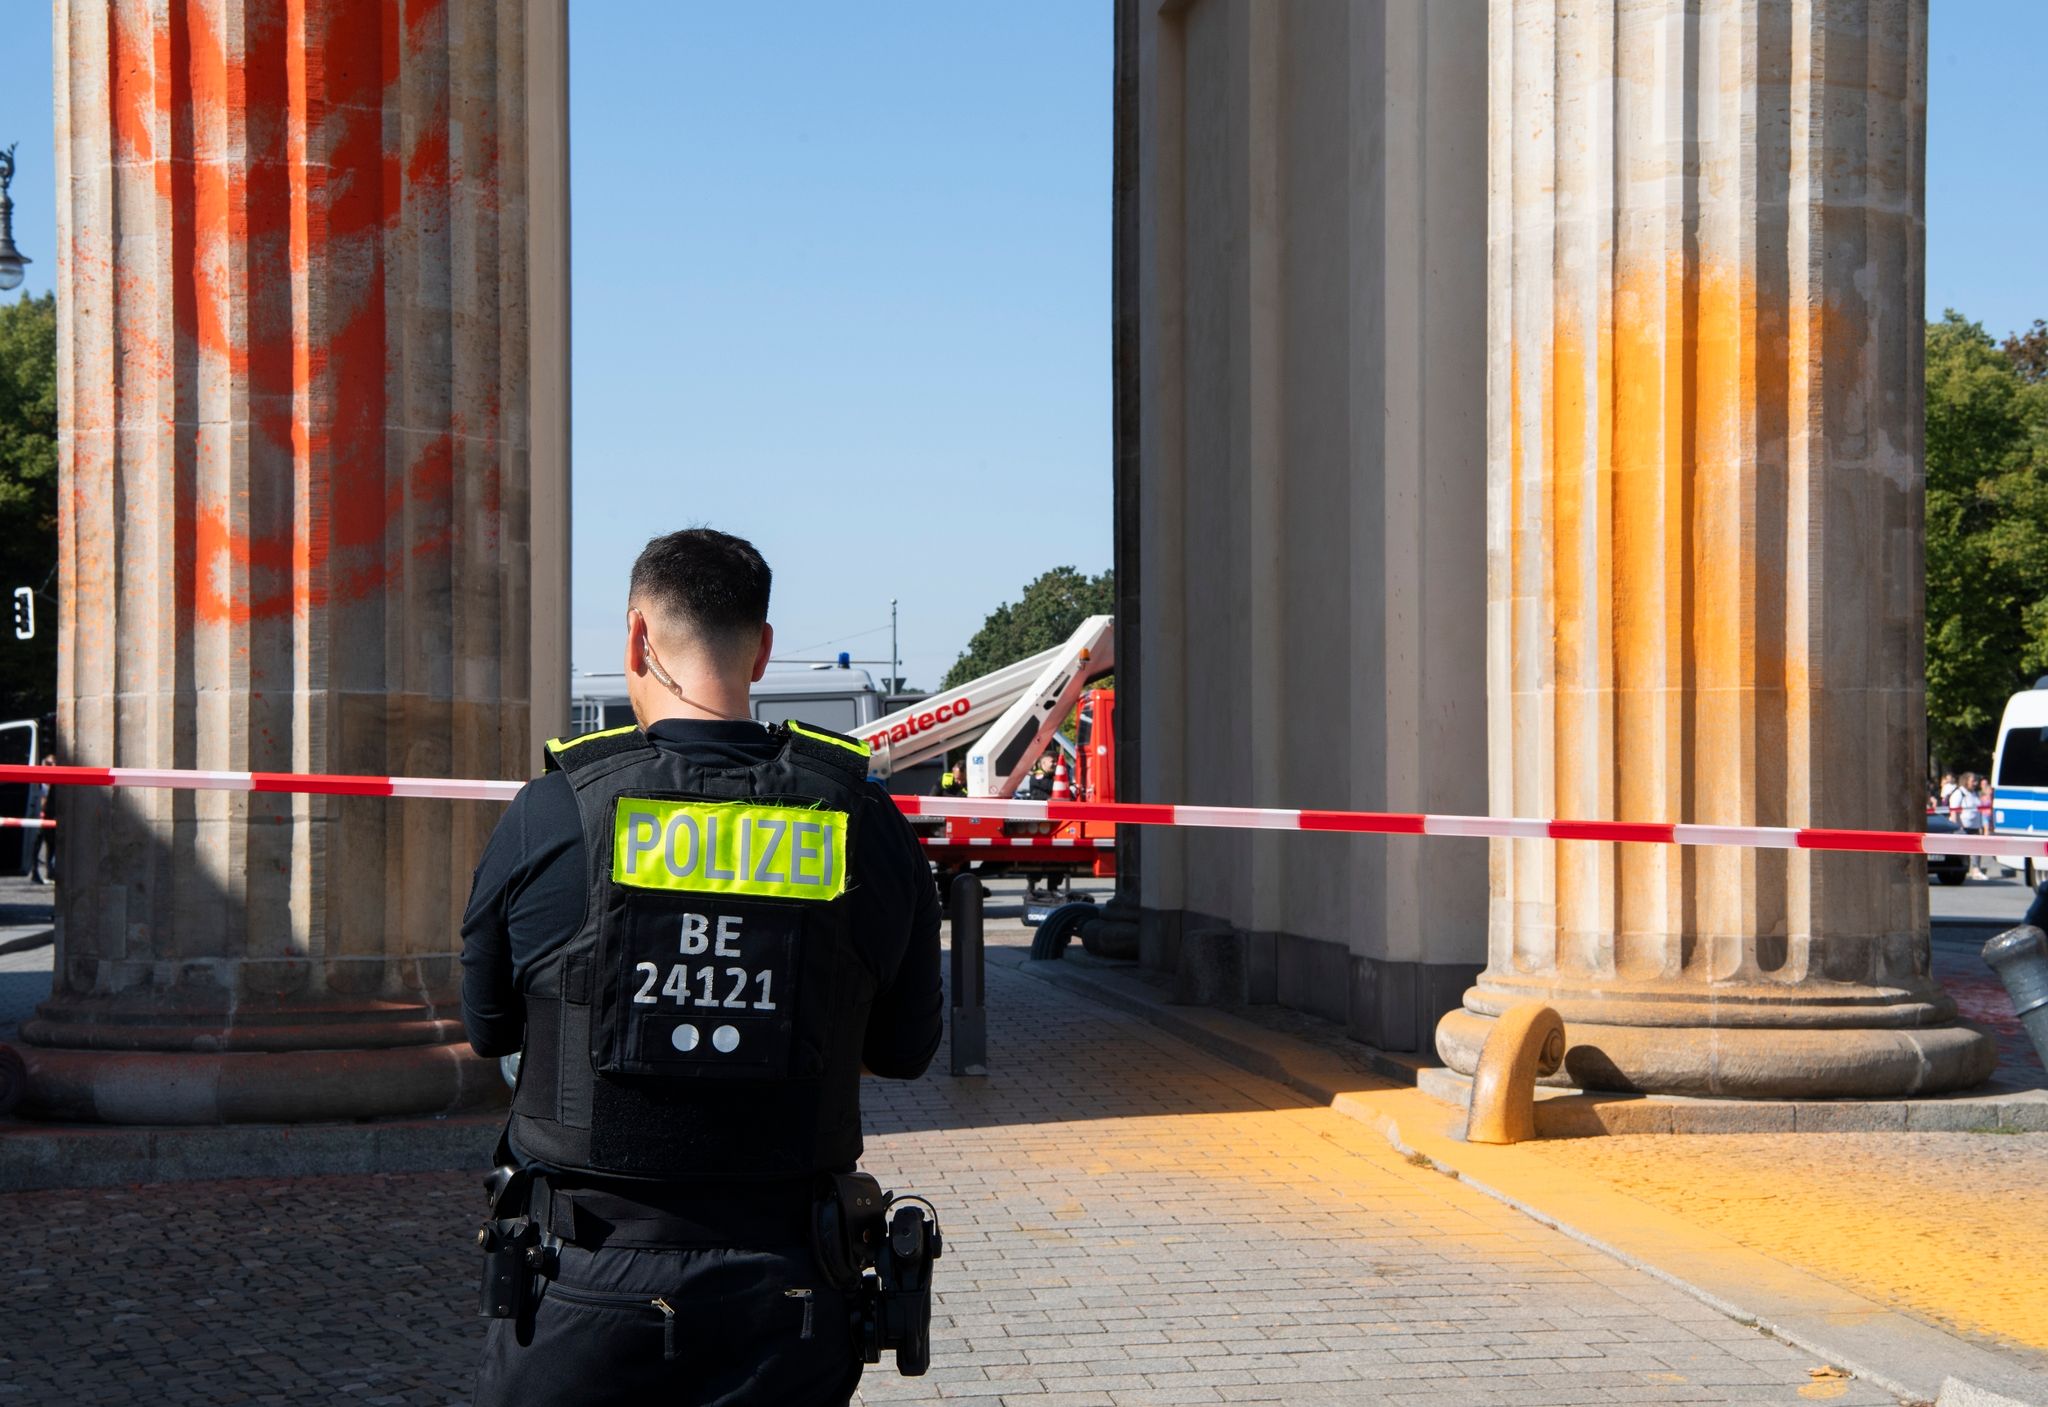 Polizisten stehen am Brandenburger Tor, das Mitglieder der Klimaschutzgruppe Letzte Generation am Sonntagvormittag mit oranger Farbe angesprüht haben.